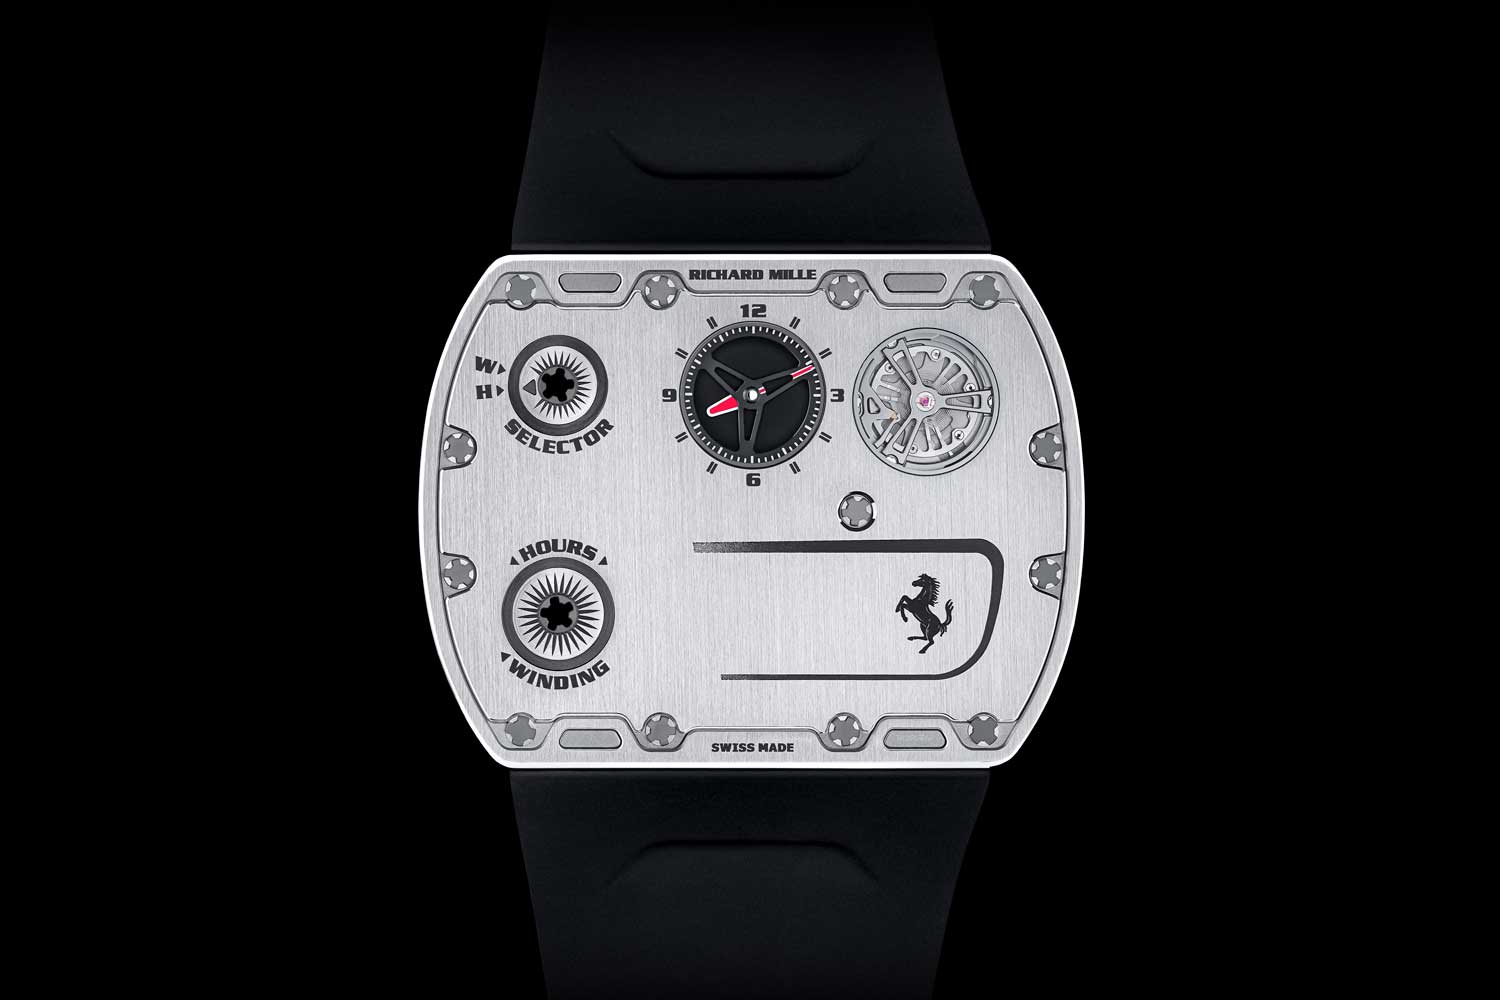 Đồng hồ Richard Mille UP - 01 chiếc đồng hồ mỏng nhất thế giới